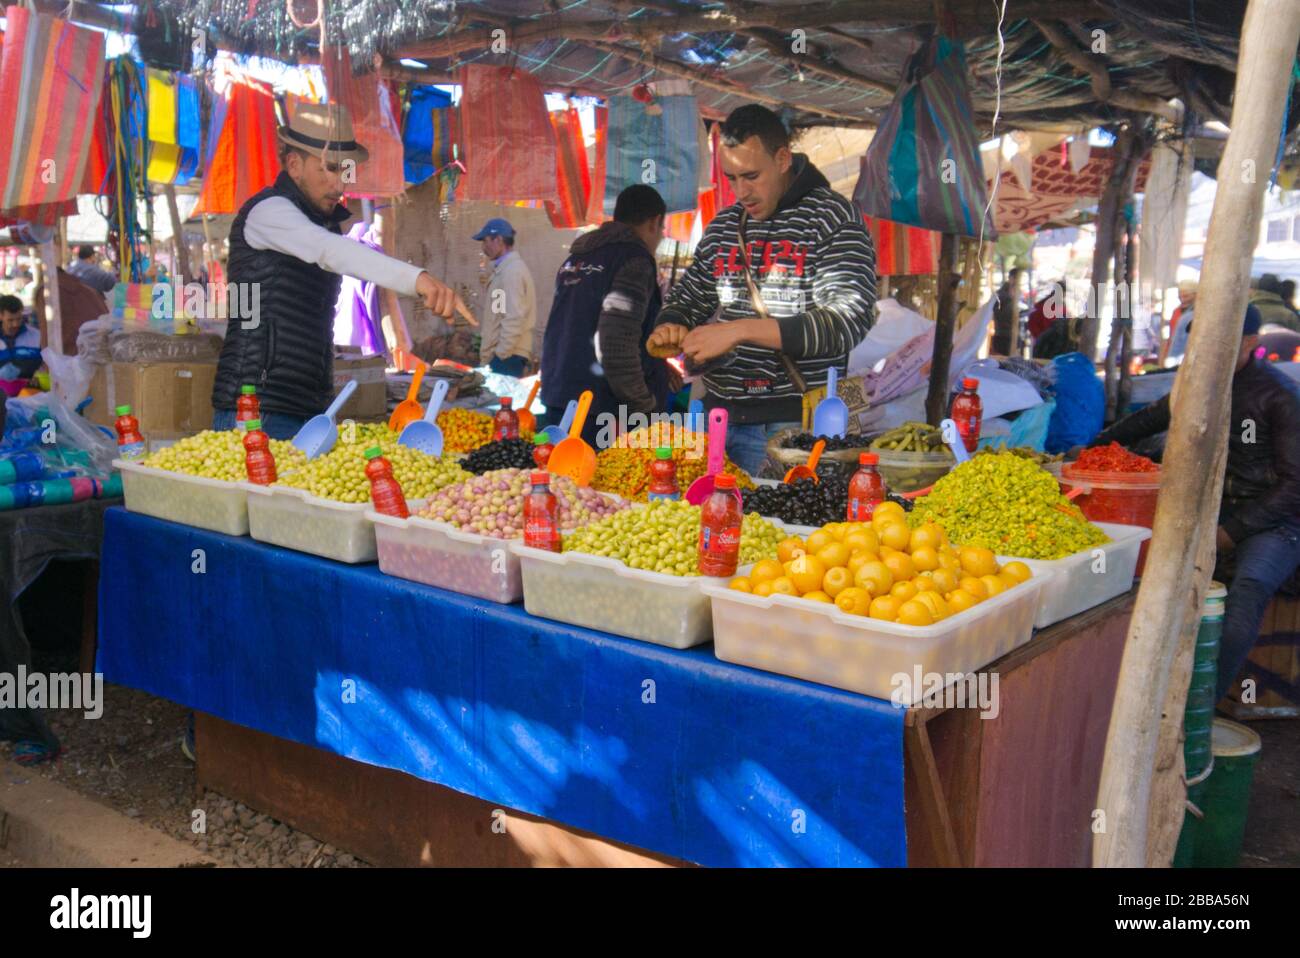 Un marché local dans un petit village au sud de Marrakech. Beaucoup de fruits, de légumes et de viande. Banque D'Images